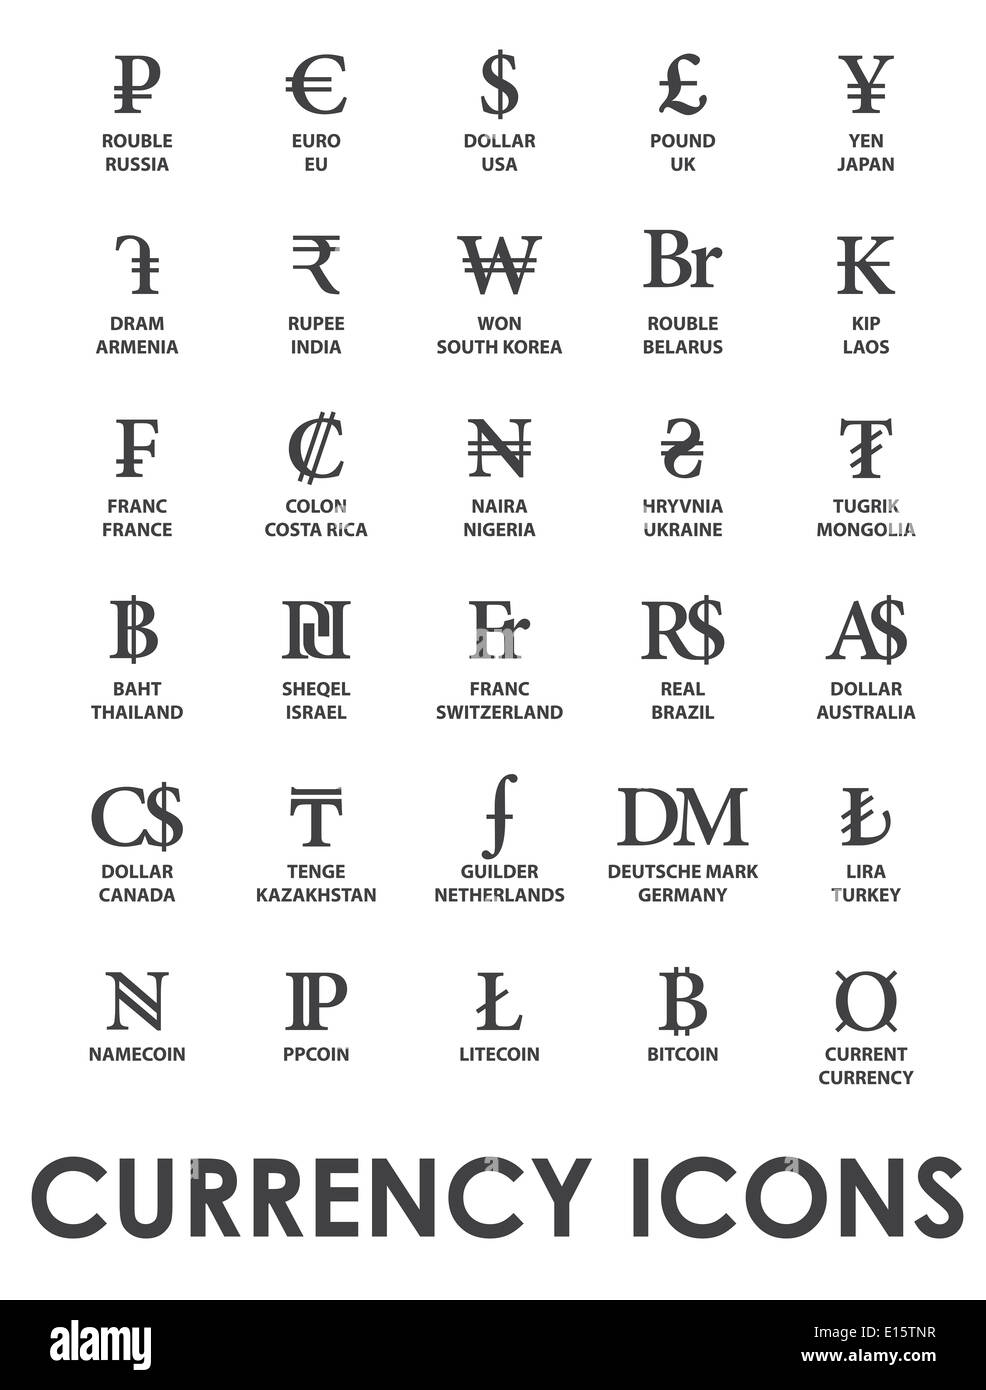 Ikonen-Währungen in der Welt Stockfoto